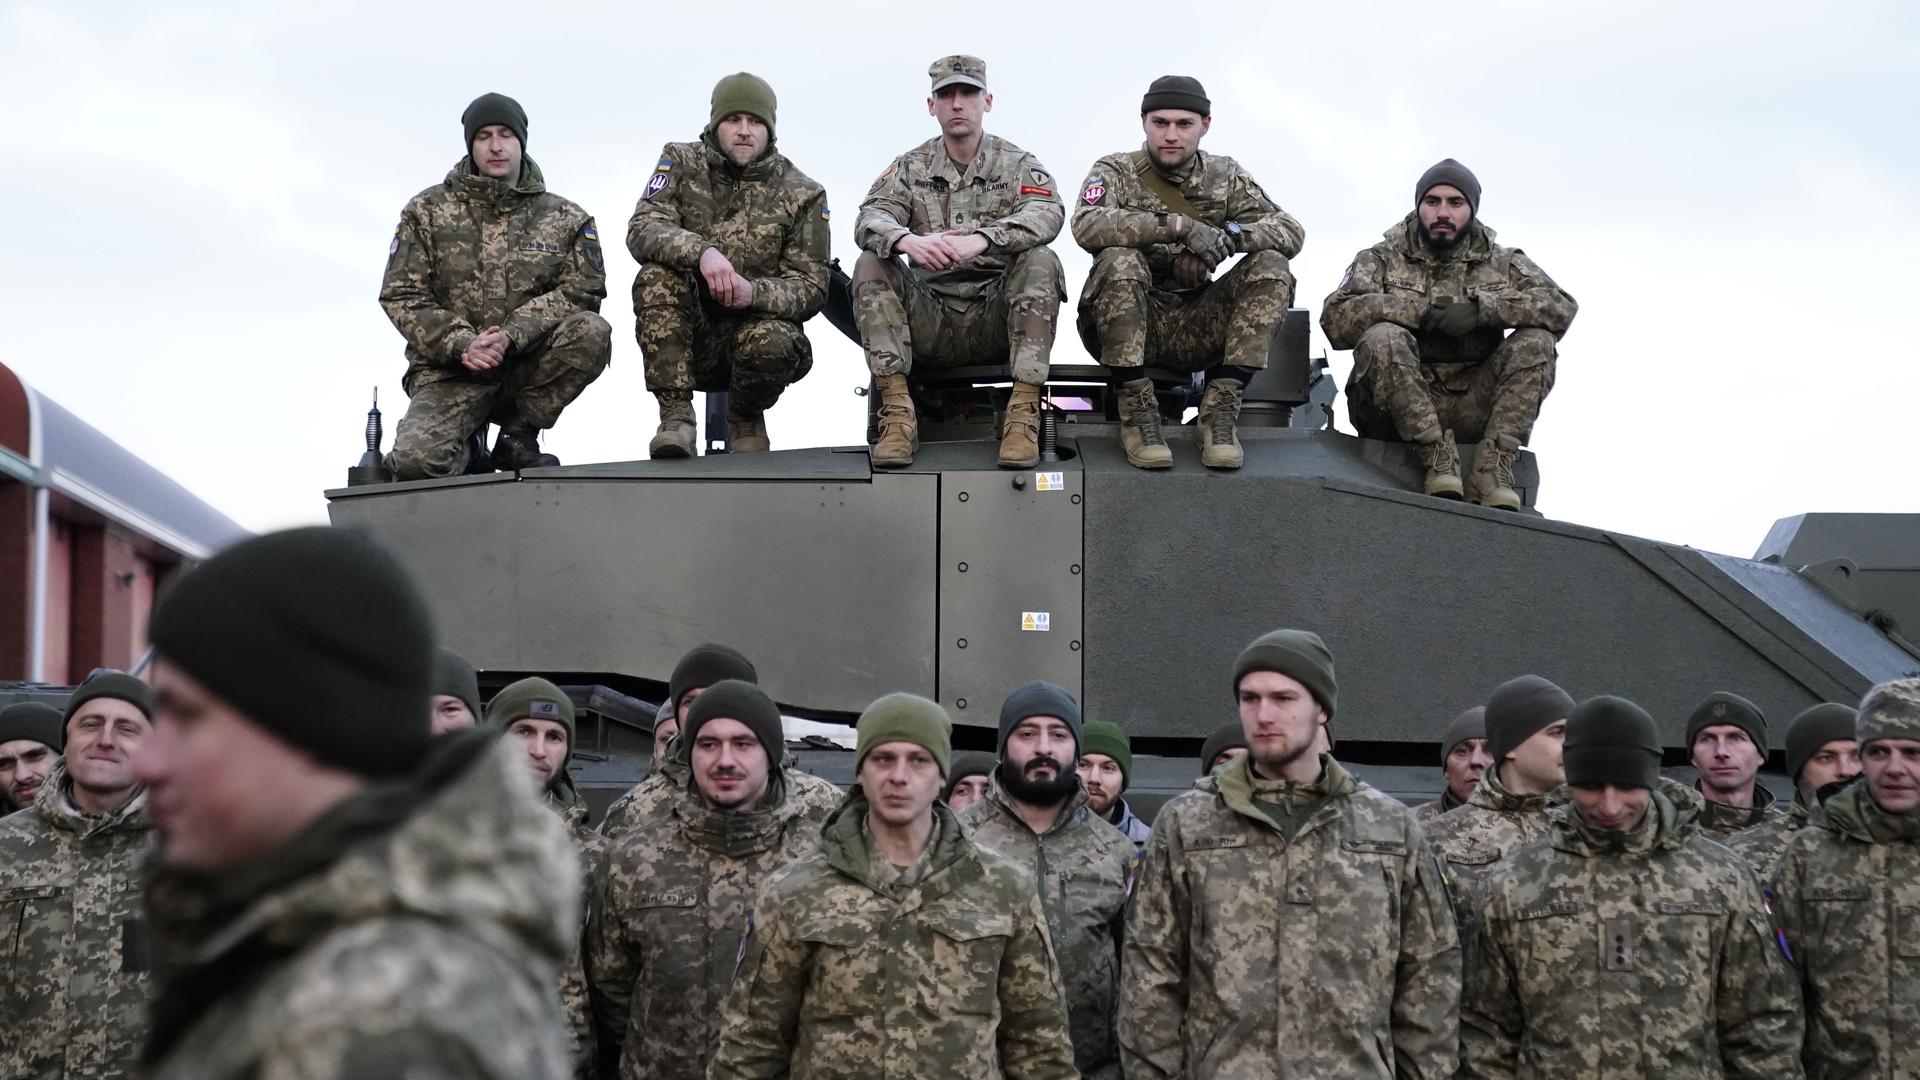 Großbritannien - Panzerausbildung ukrainischer Soldaten abgeschlossen